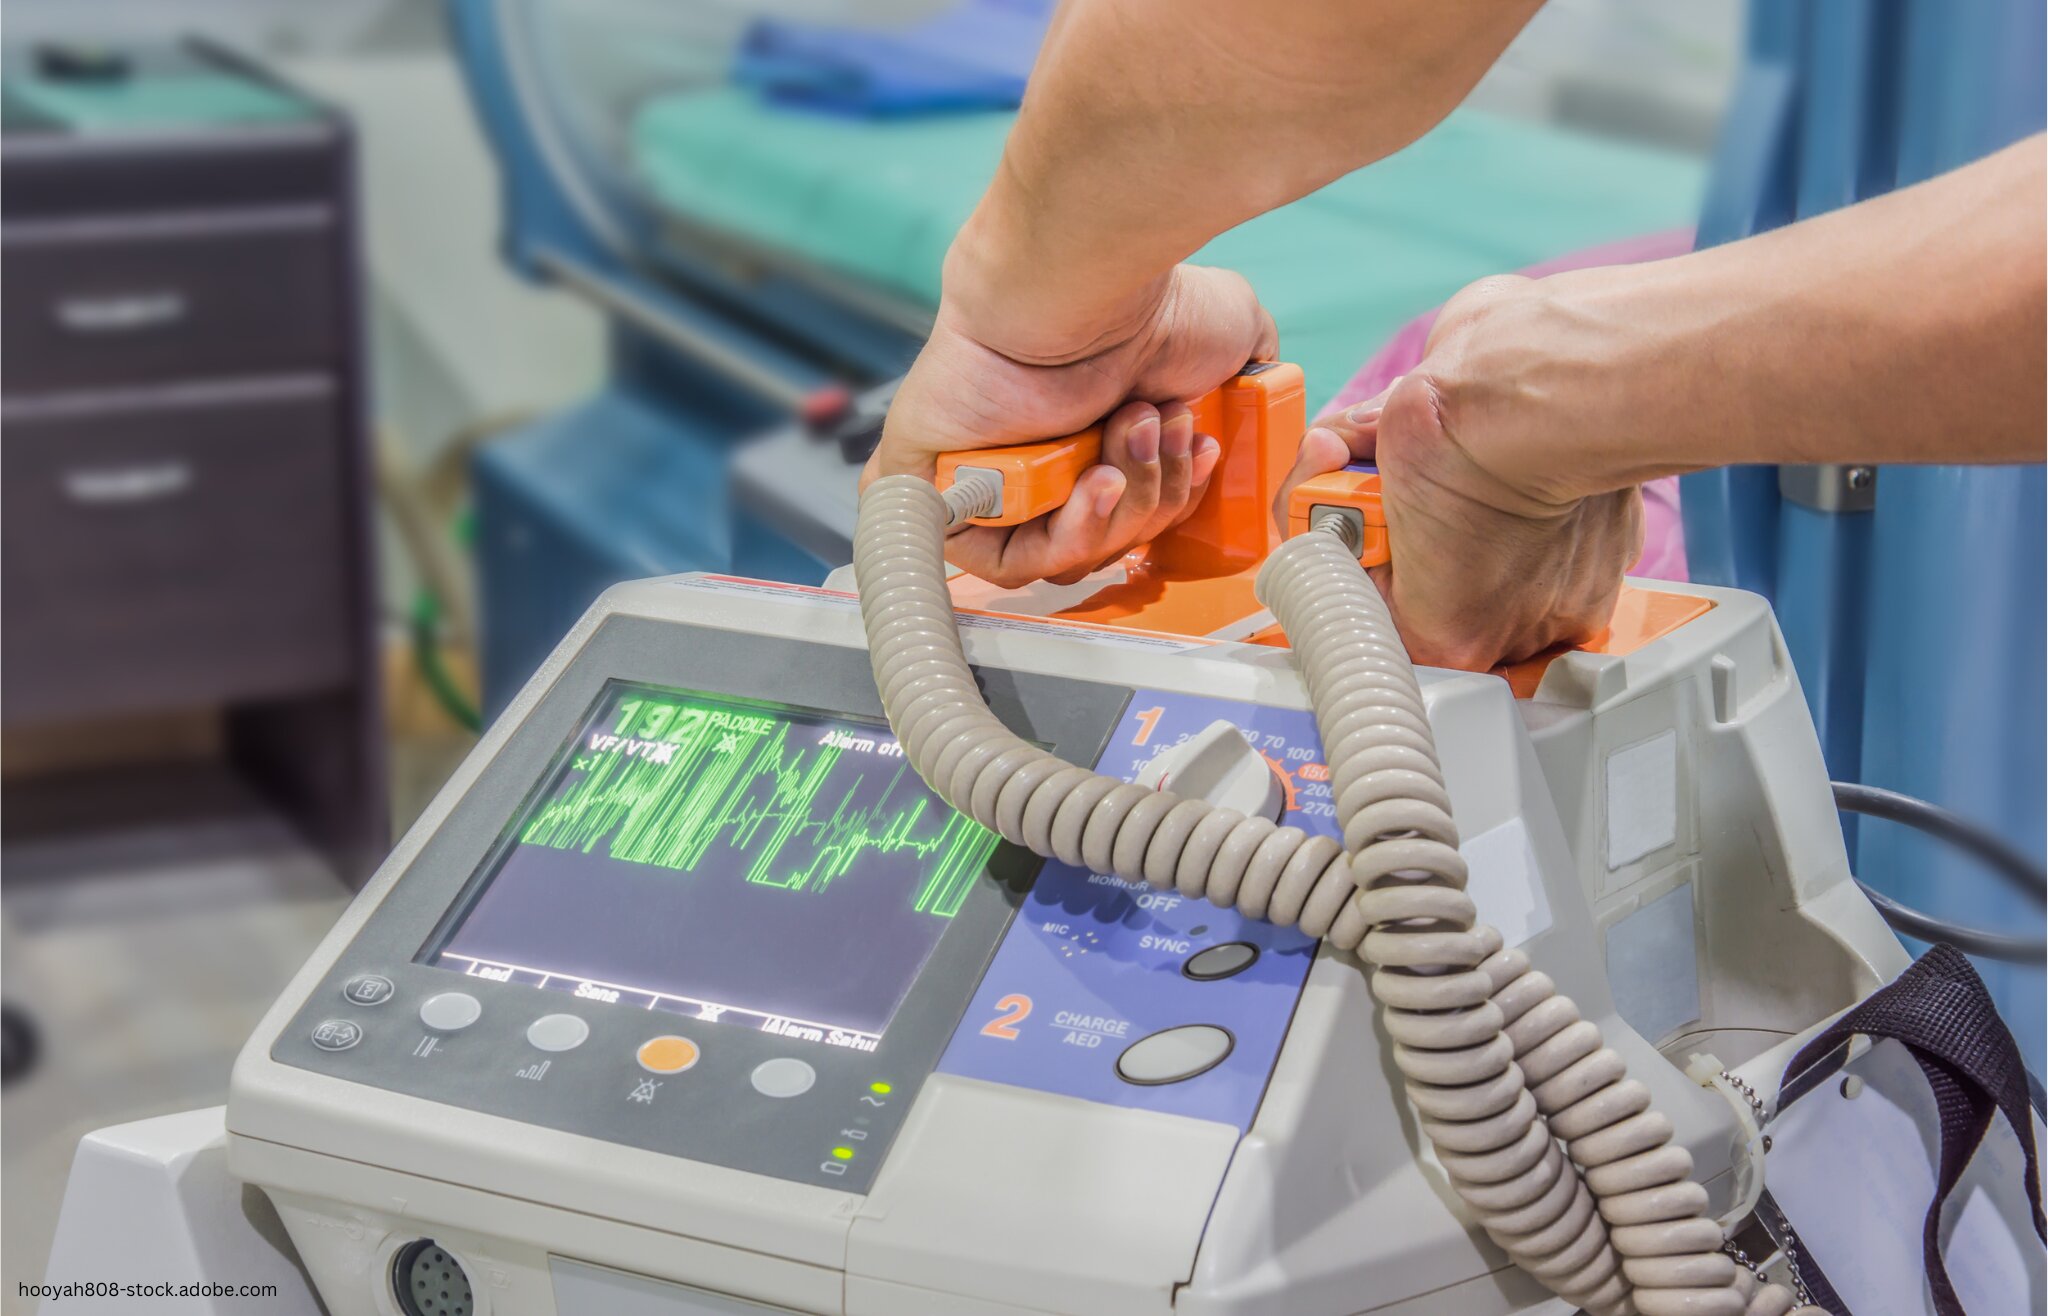 Leben mit Defibrillator – darauf sollten Herzpatienten achten